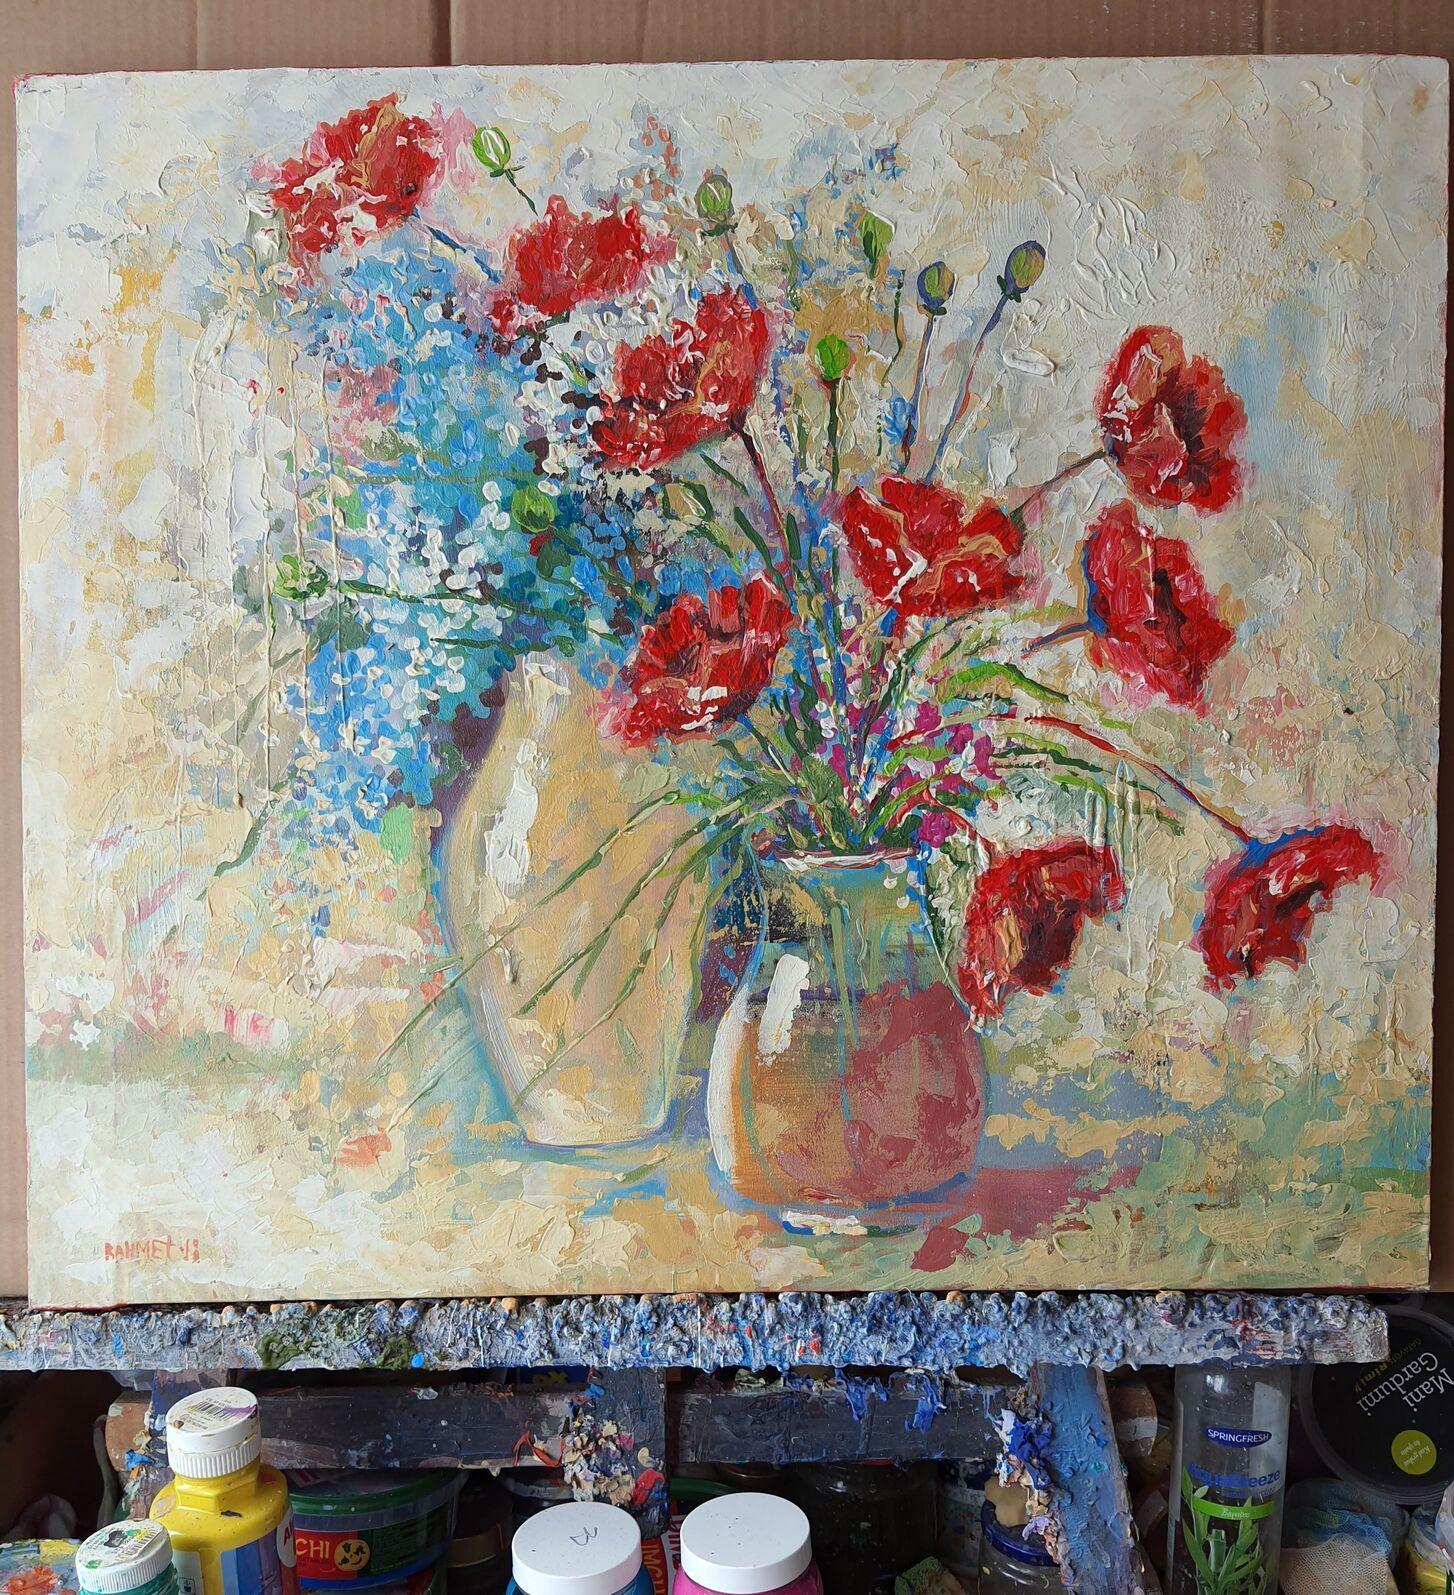  Poppies and Two Jugs - Painting by RAKHMET REDZHEPOV (RAMZI)